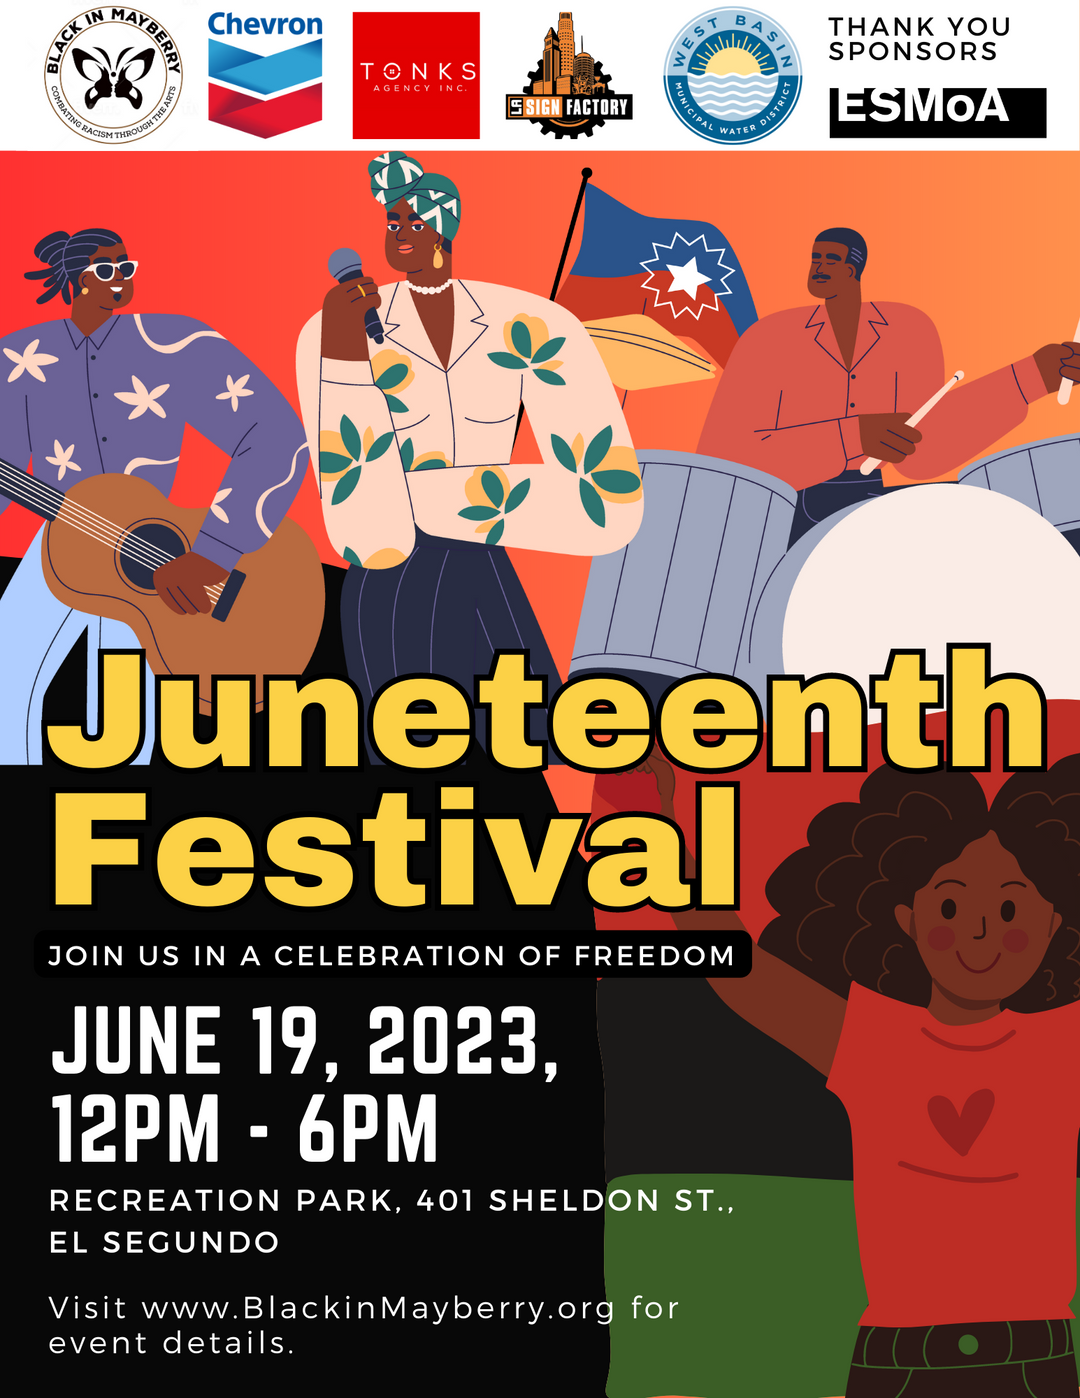 NEW EVENT: Juneteenth Festival - El Segundo - June 19, 2023 12pm - 6pm